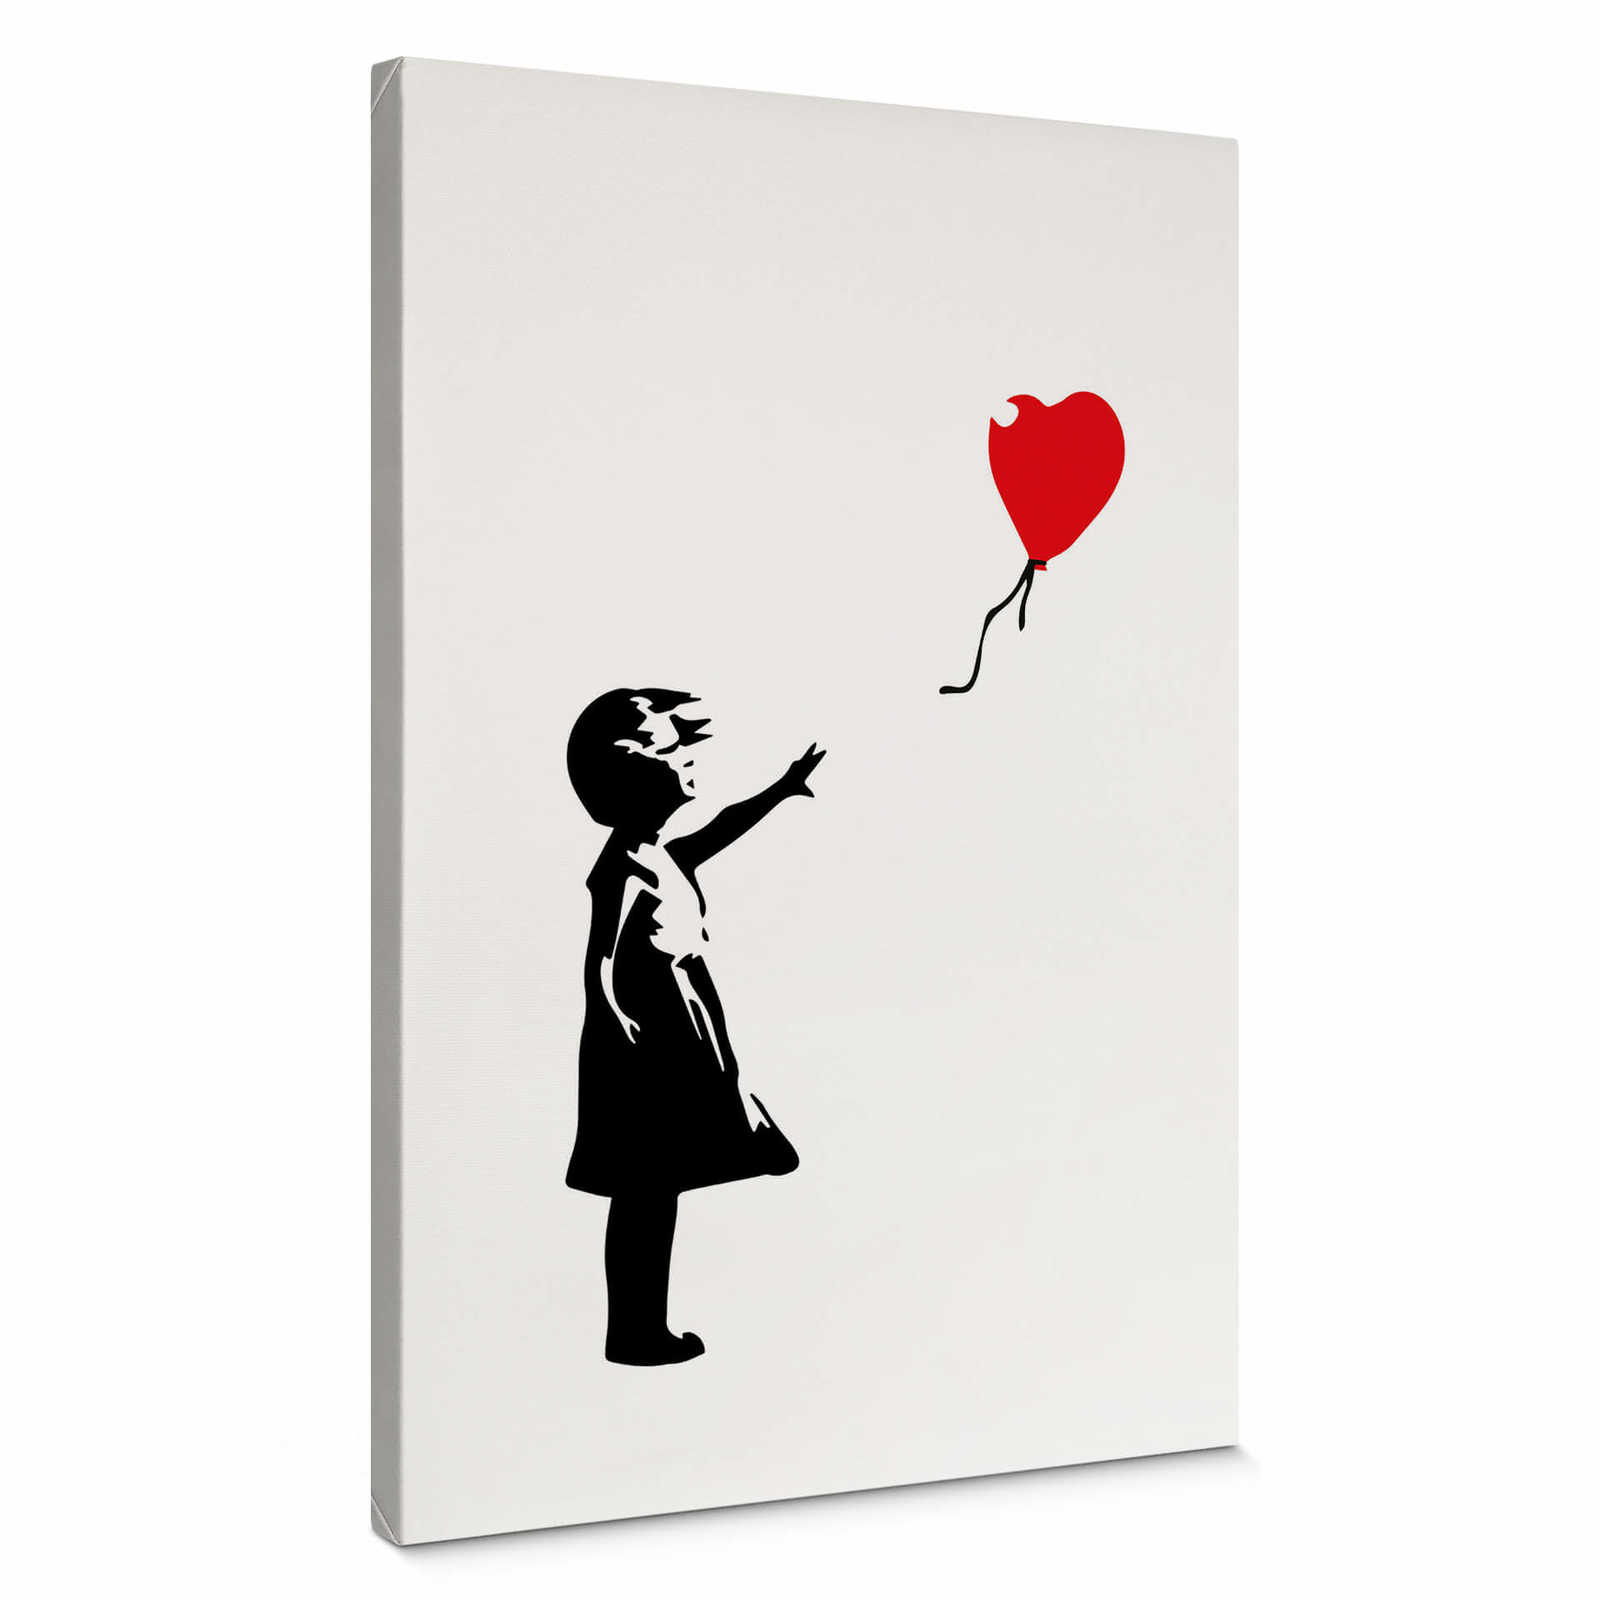         Leinwandbild "Mädchen mit rotem Luftballon" von Banksy – 0,50 m x 0,70 m
    